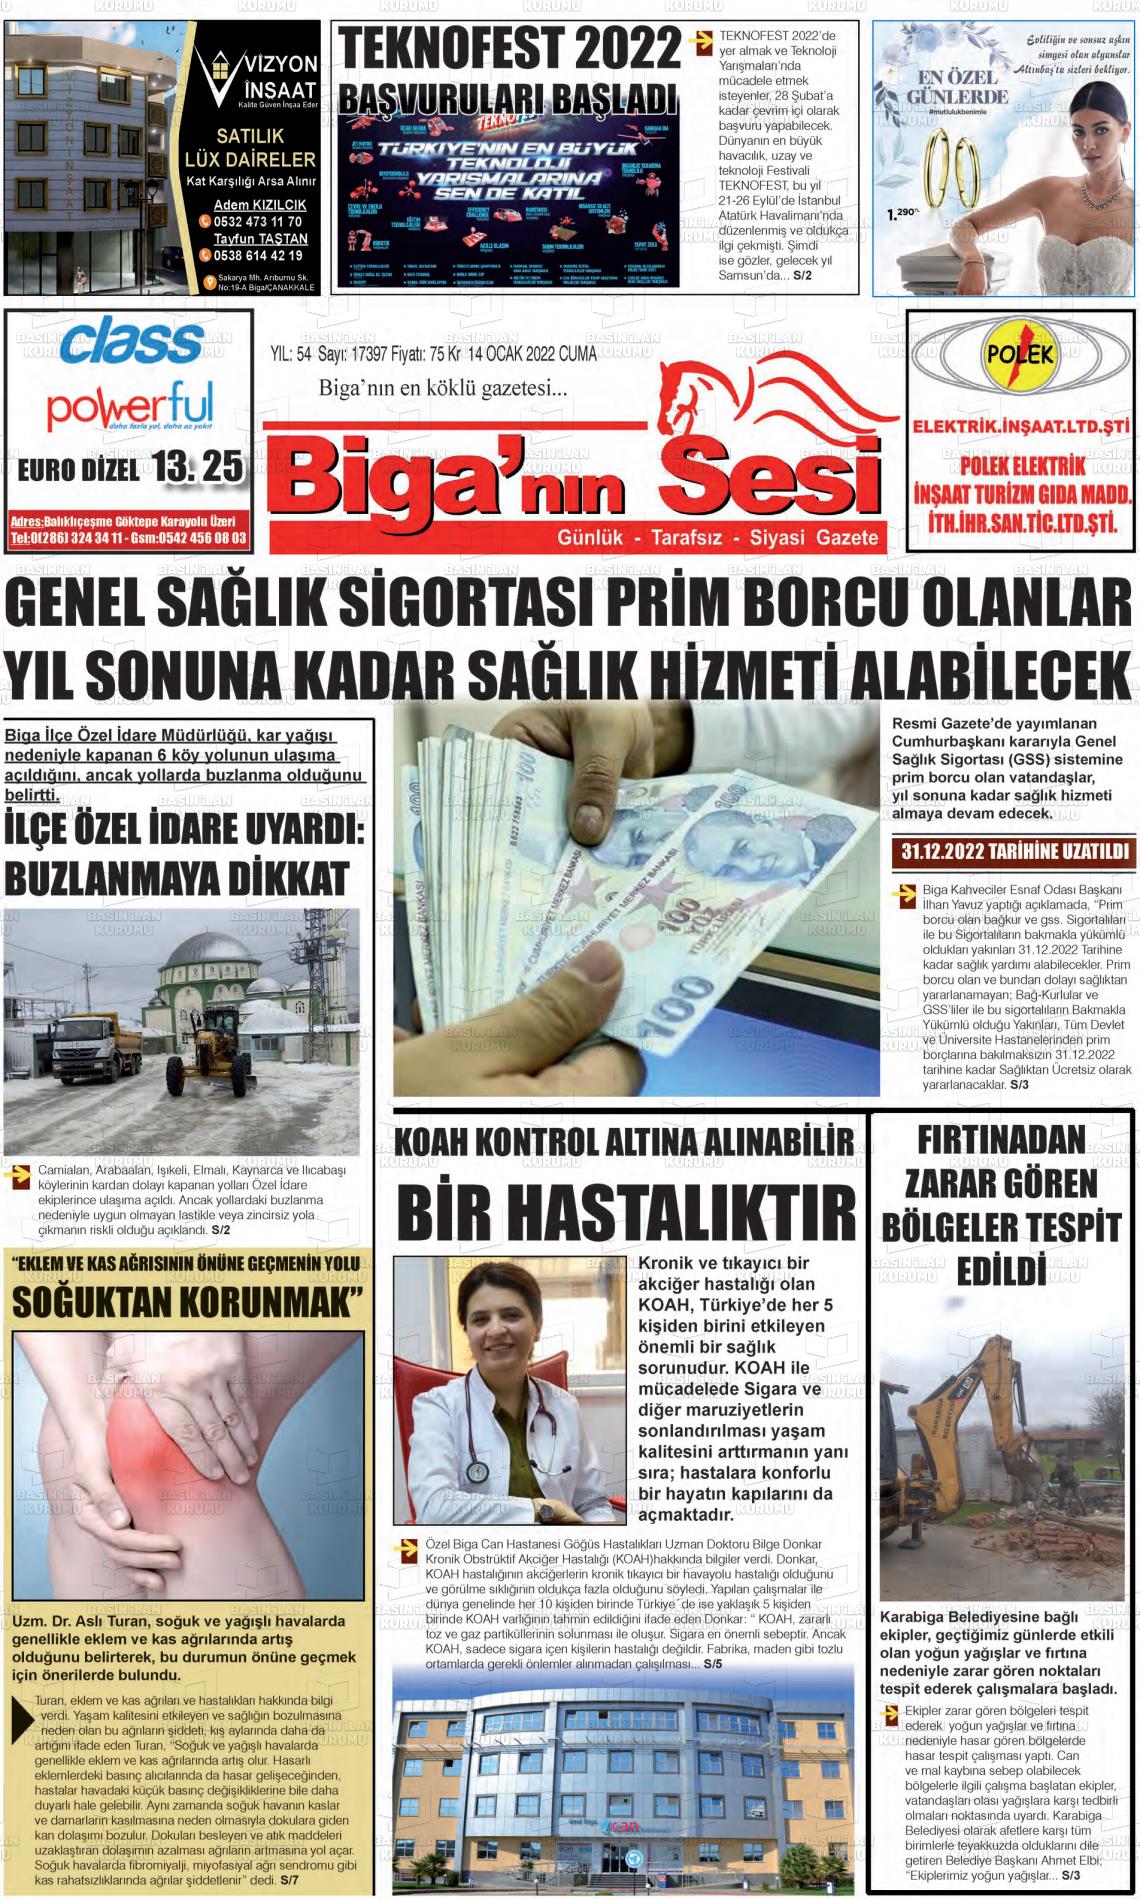 14 Ocak 2022 Biga'nın Sesi Gazete Manşeti